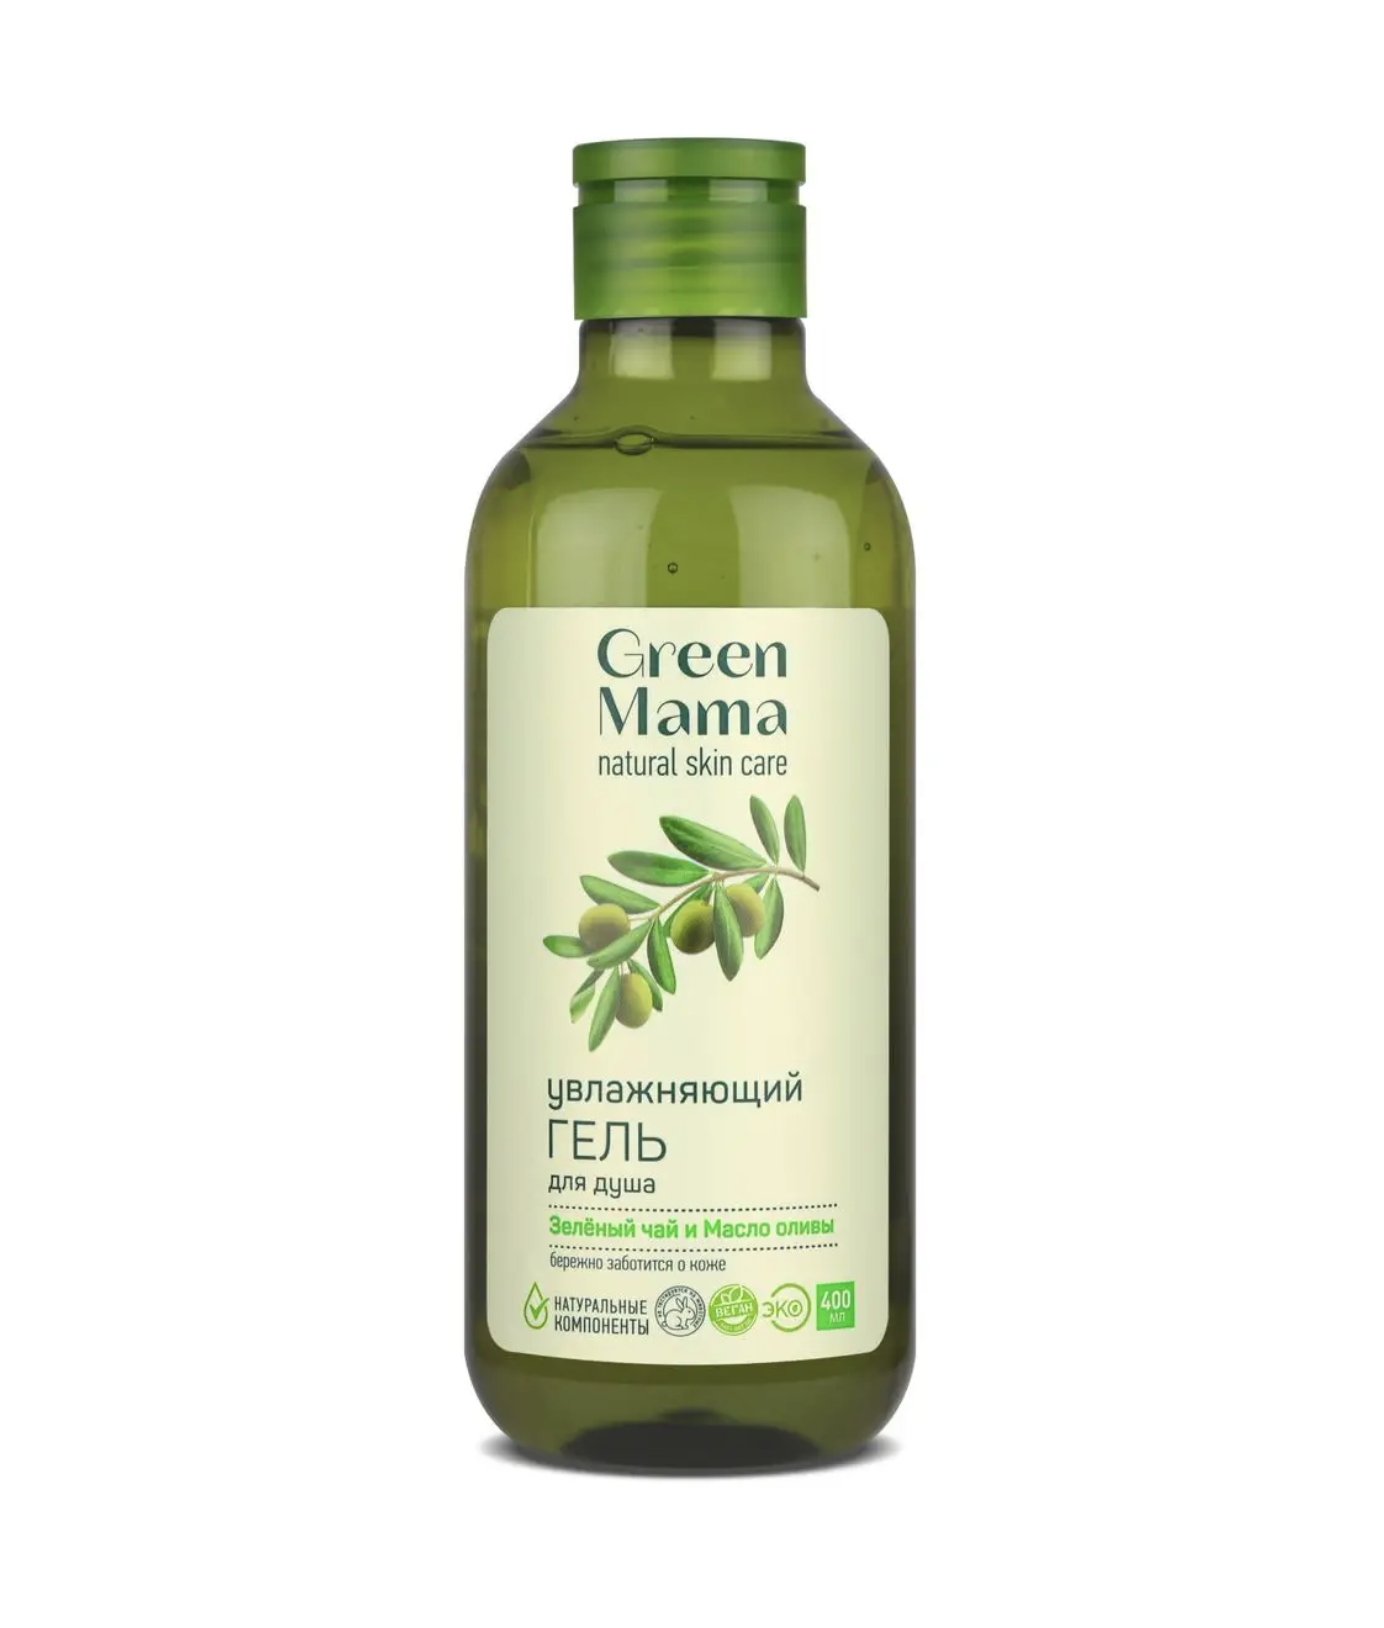    / Green Mama Natural Skin Care          400 